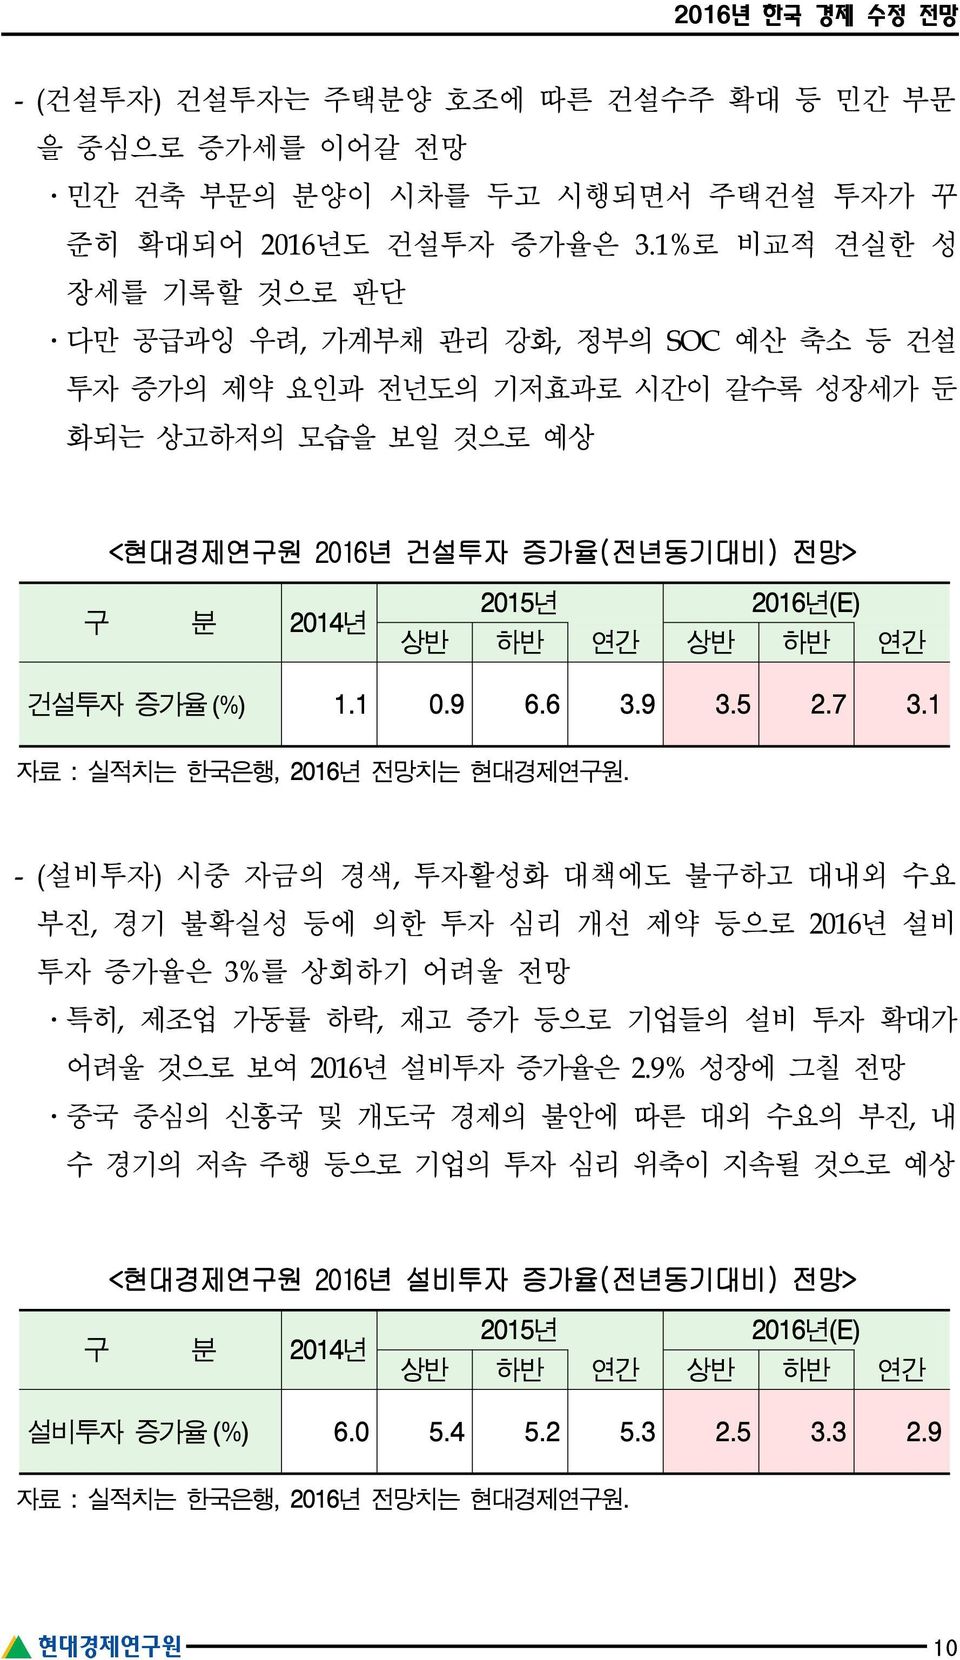 하반 연간 상반 하반 연간 건설투자 증가율 (%) 1.1 0.9 6.6 3.9 3.5 2.7 3.1 자료 : 실적치는 한국은행, 2016년 전망치는 현대경제연구원.